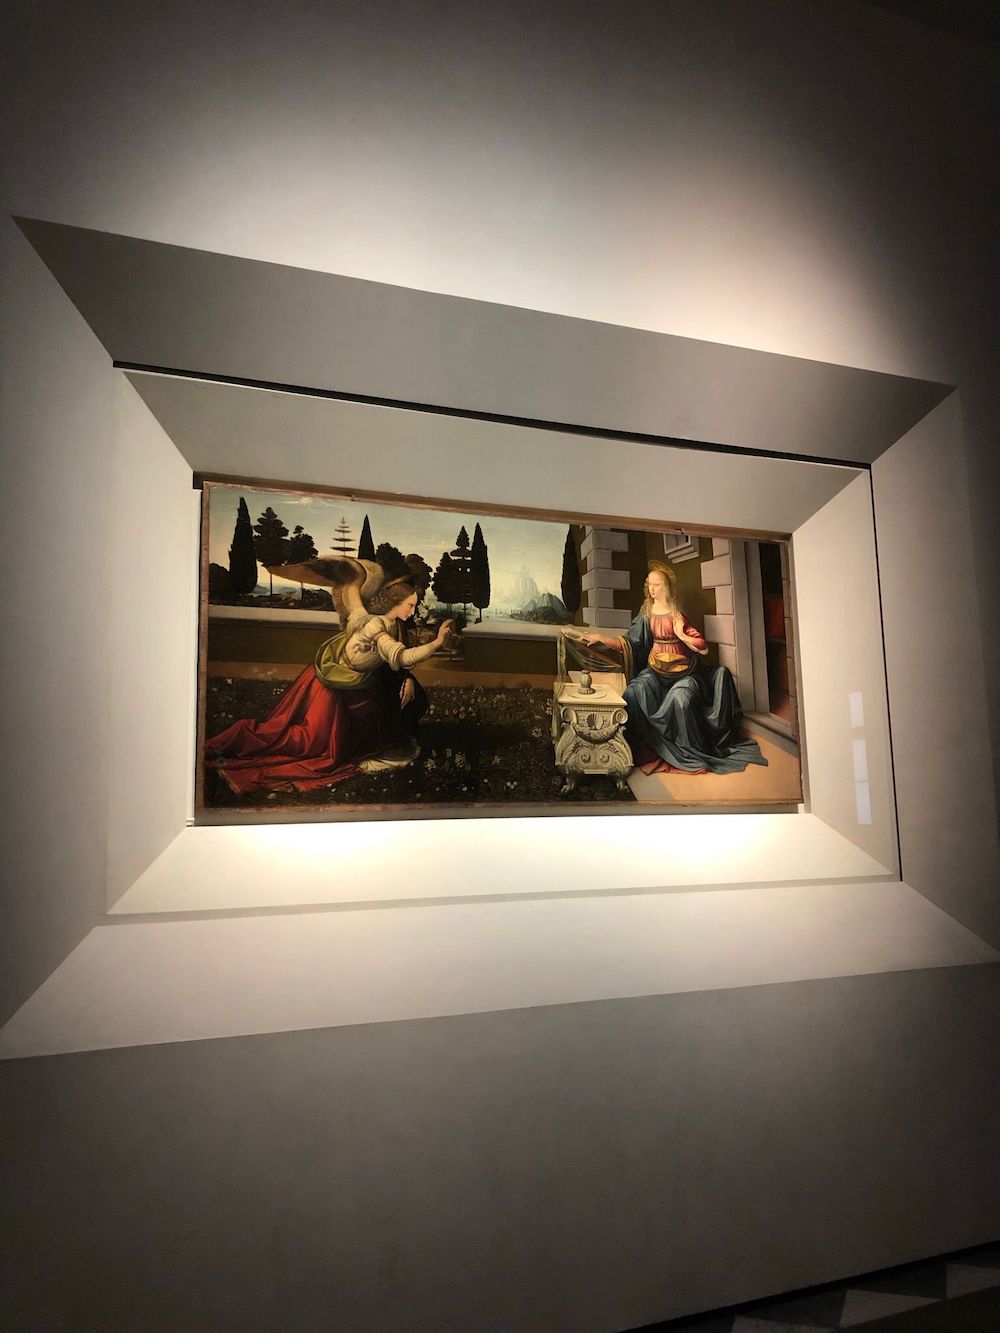 Galeria Degli Uffizi